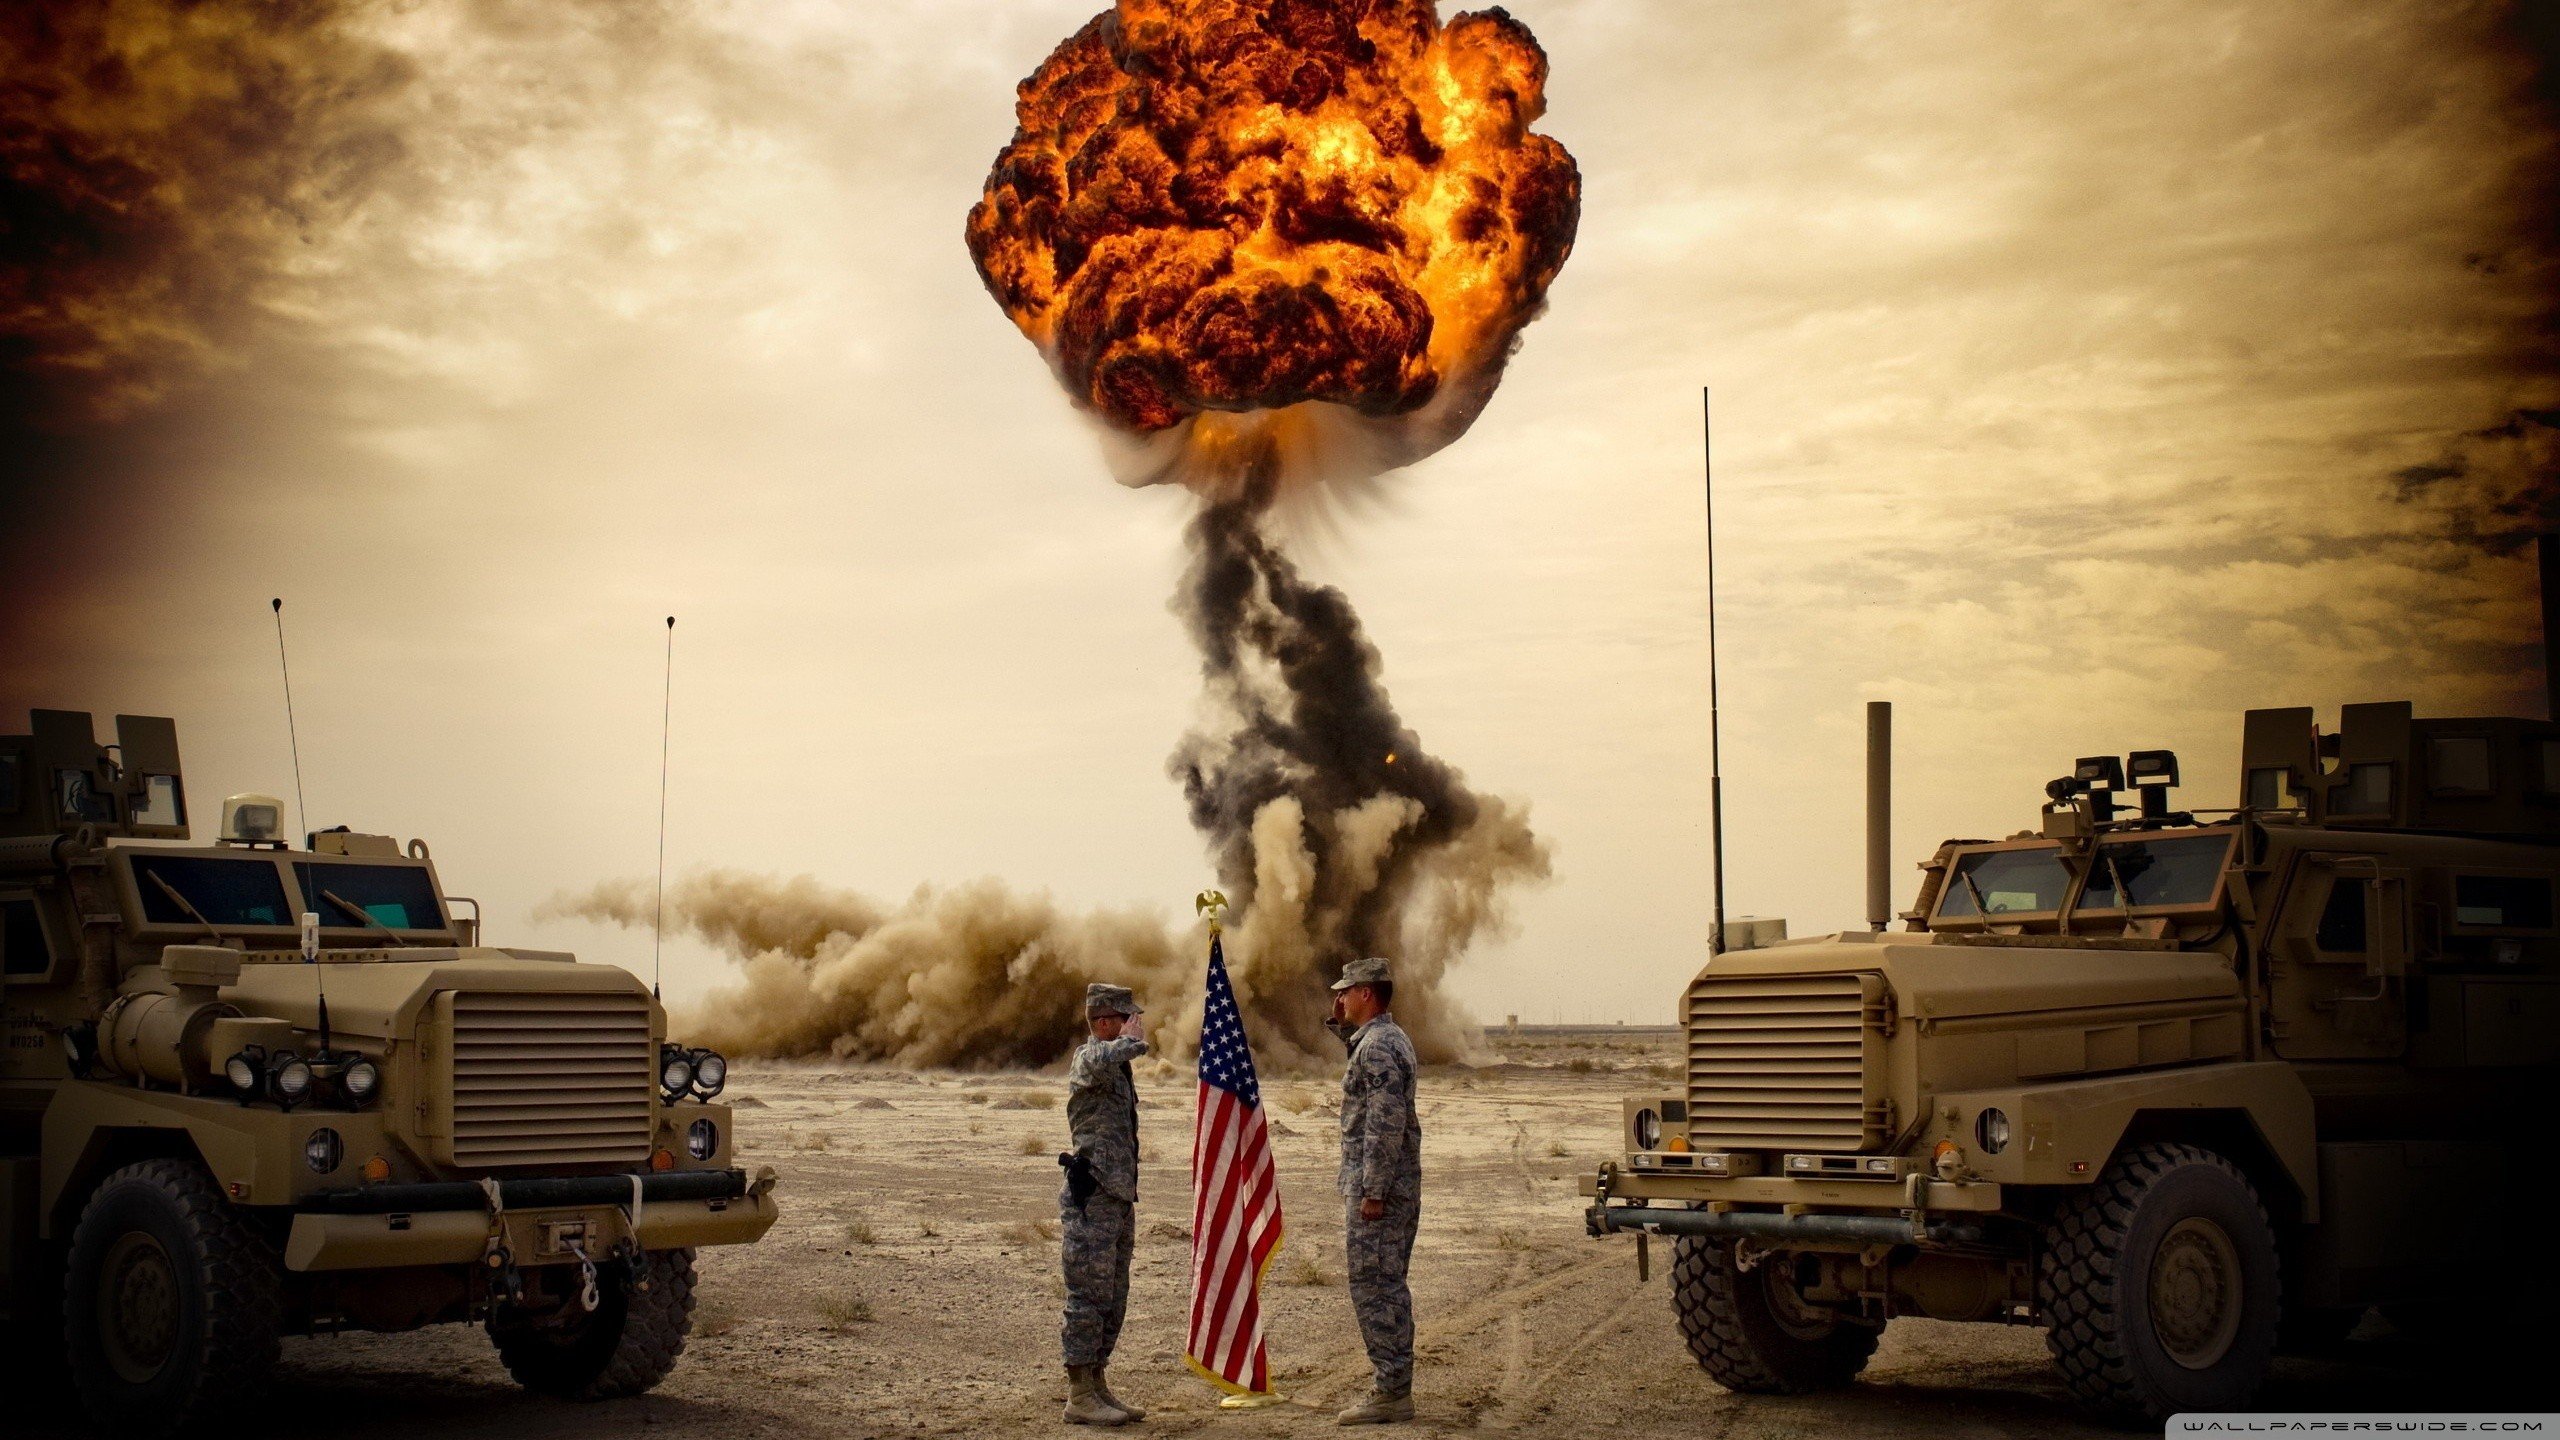 war, Esplosive, American flag, Military Wallpaper